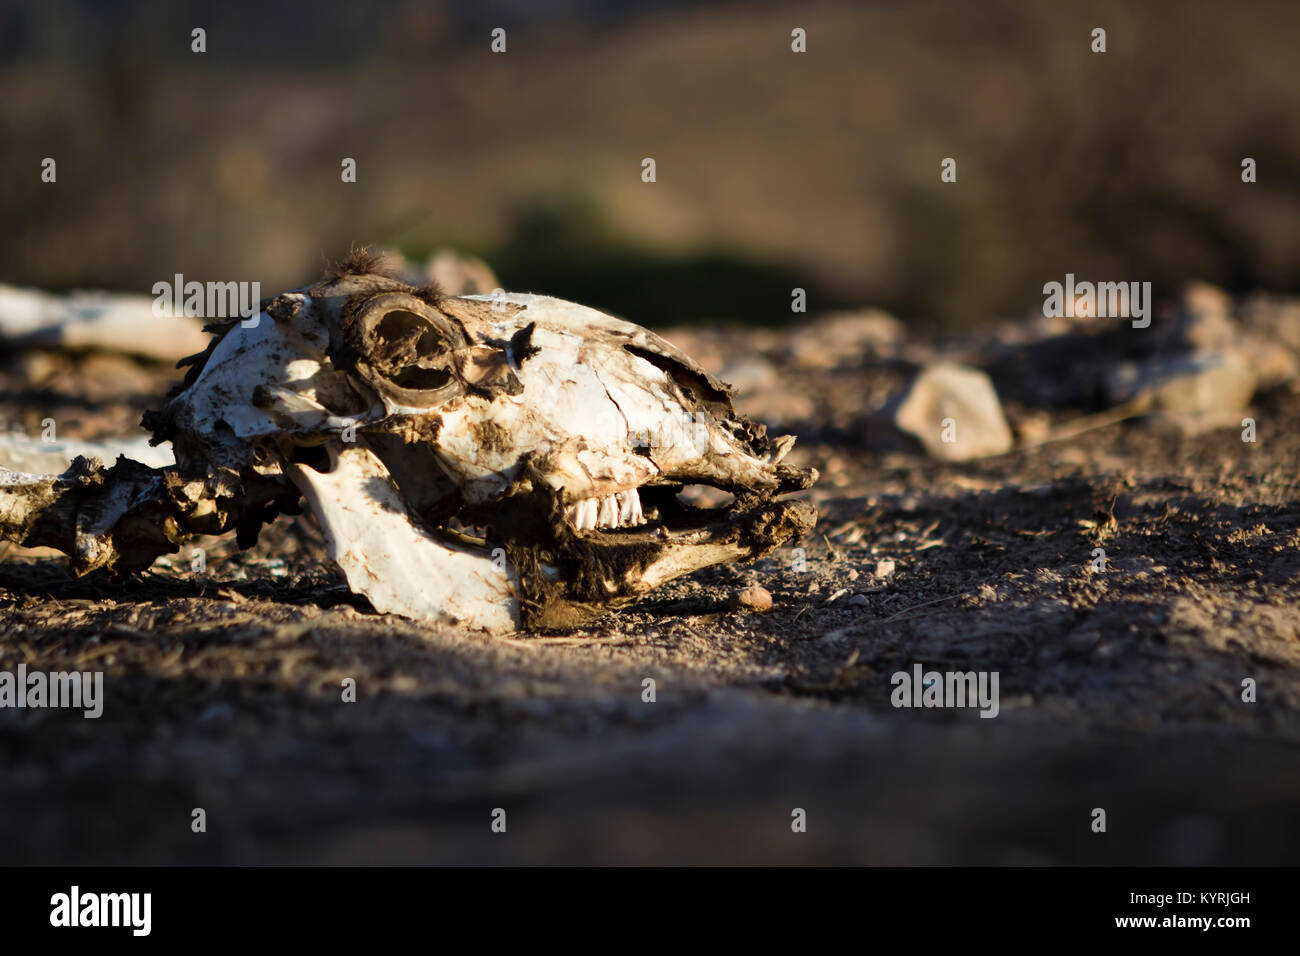 Cranio animale in luce naturale, grim, deprimente, potente immagine degli effetti del cambiamento climatico e del danno ambientale. Foto Stock